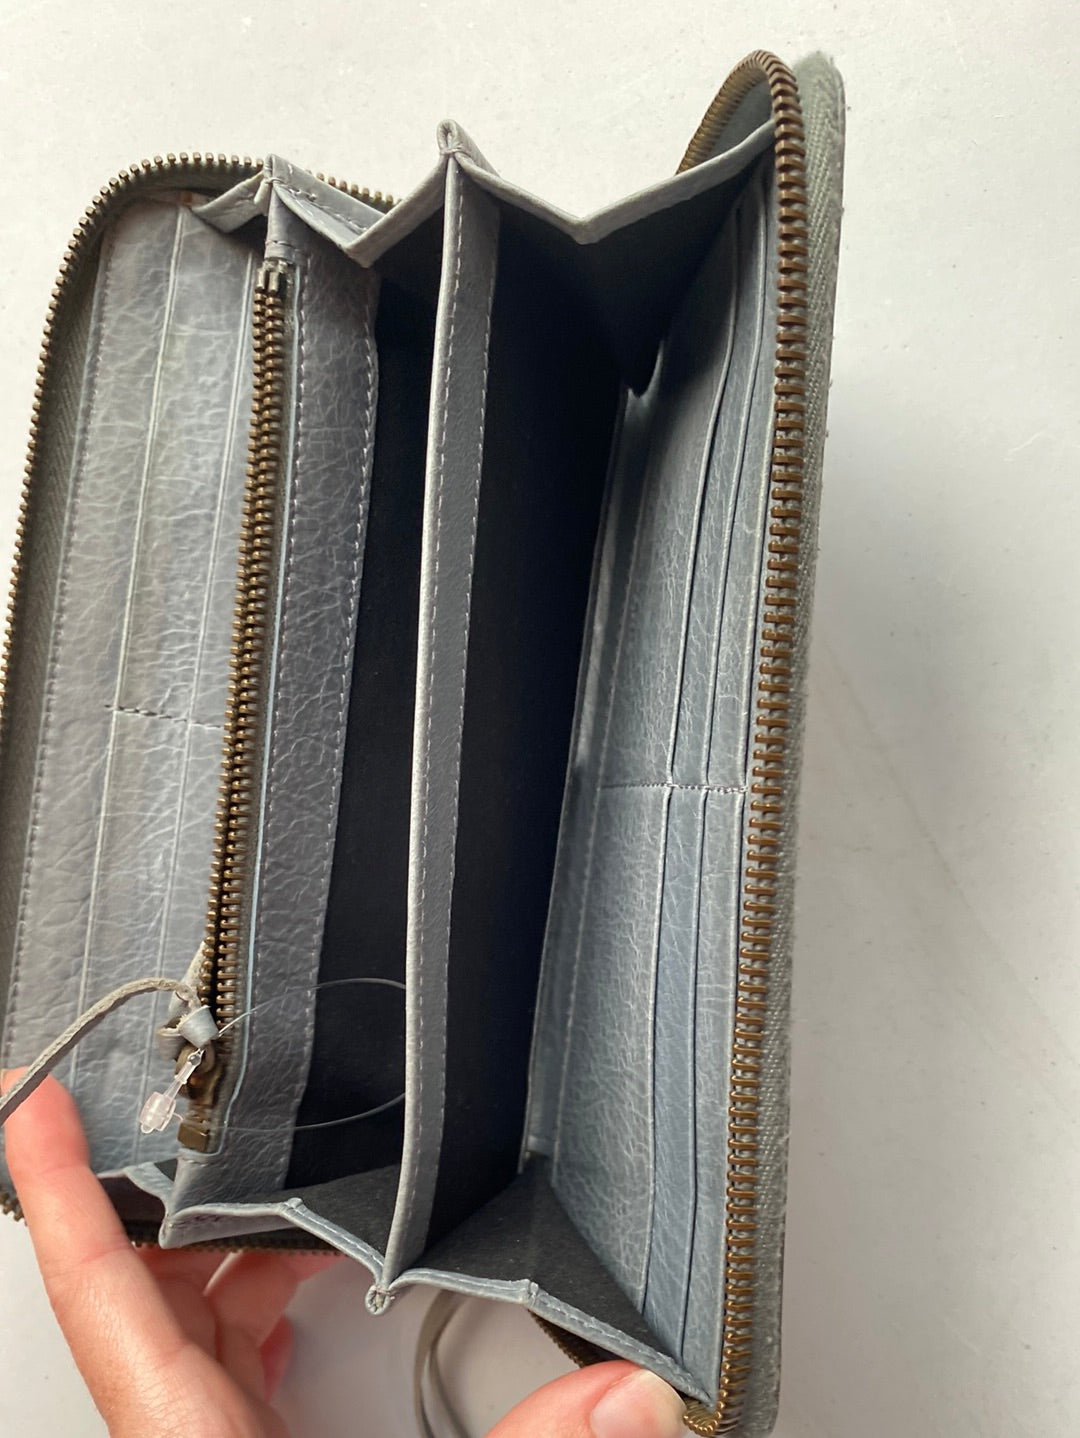 Balenciaga Grey Moto Wallet